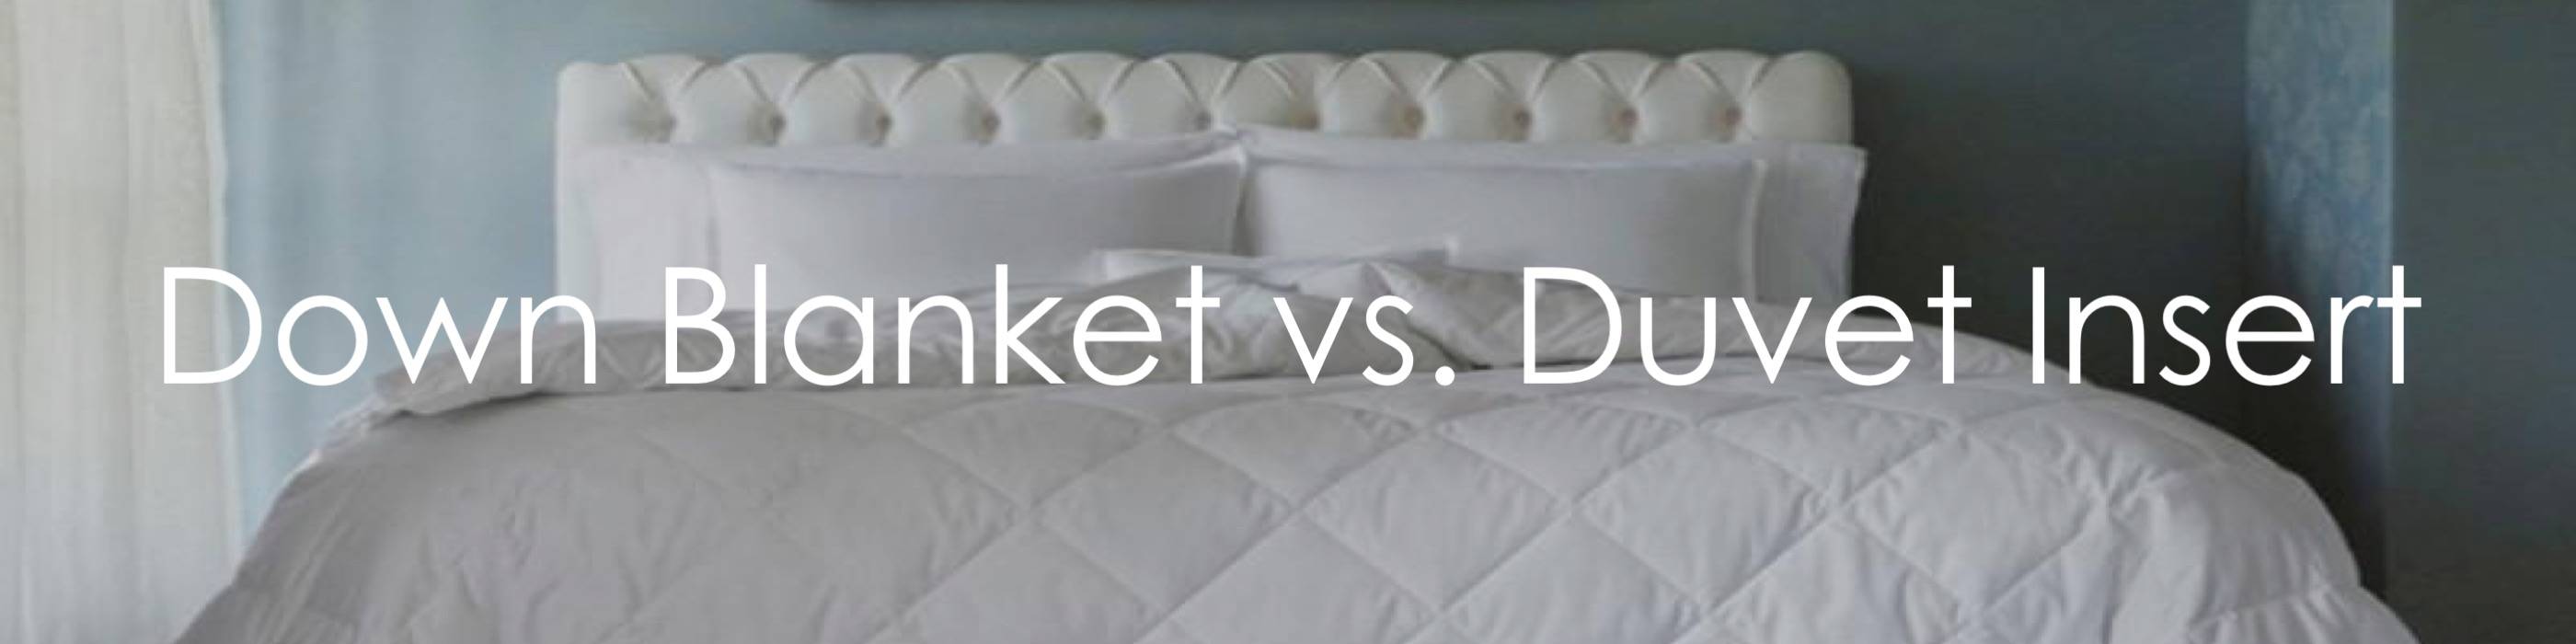 Down Blanket Cover Vs Duvet Insert, Do You Need A Duvet Cover For A Down Comforter